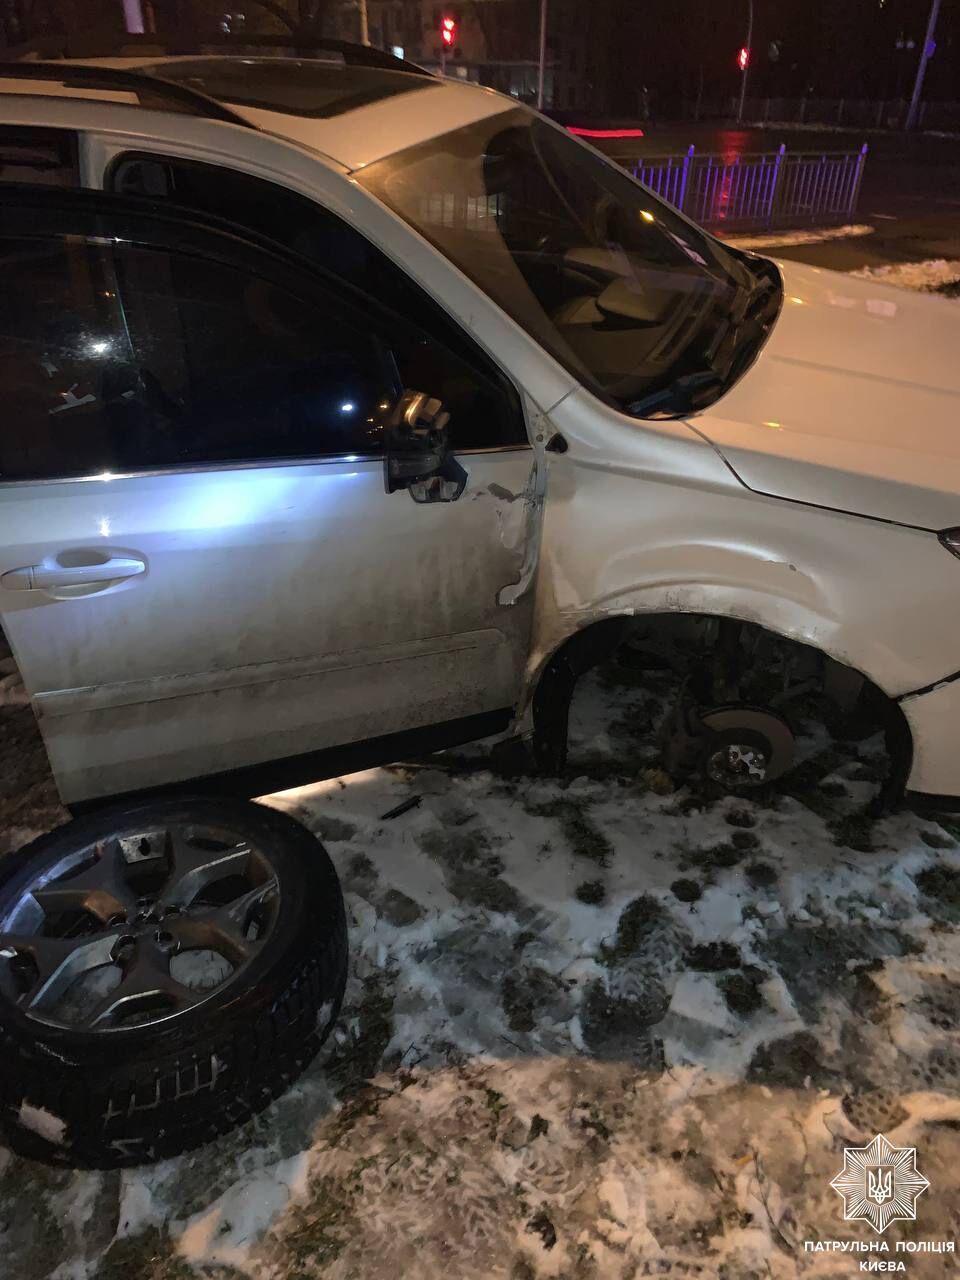 В Киеве пьяный водитель наехал на бордюр, после чего машину отбросило на забор и тротуар. Фото